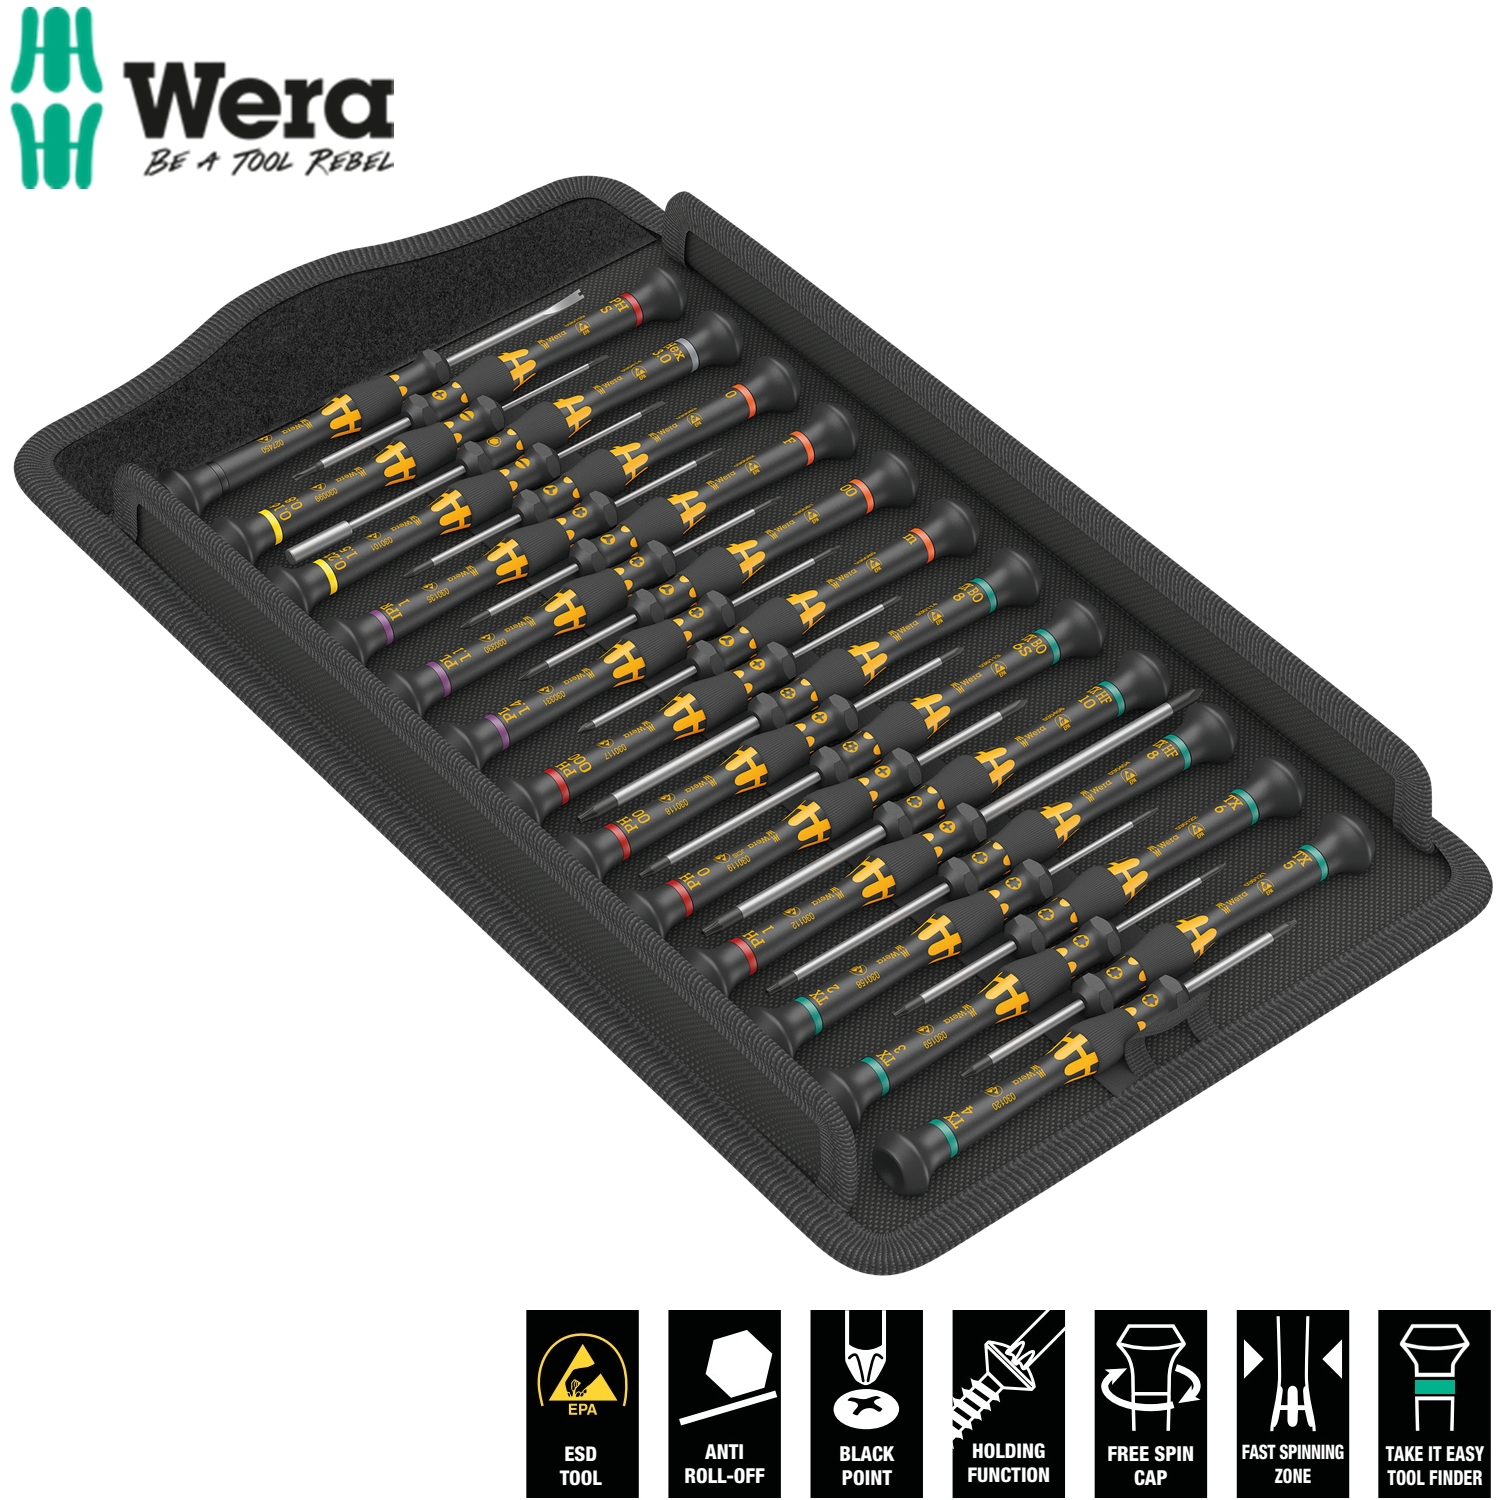 Bộ tua vít điện tử Wera 05134019001 Kraftform Micro ESD Big Pack 1 Screwdriver set for electronic applications chống tĩnh điện gồm 25 cái